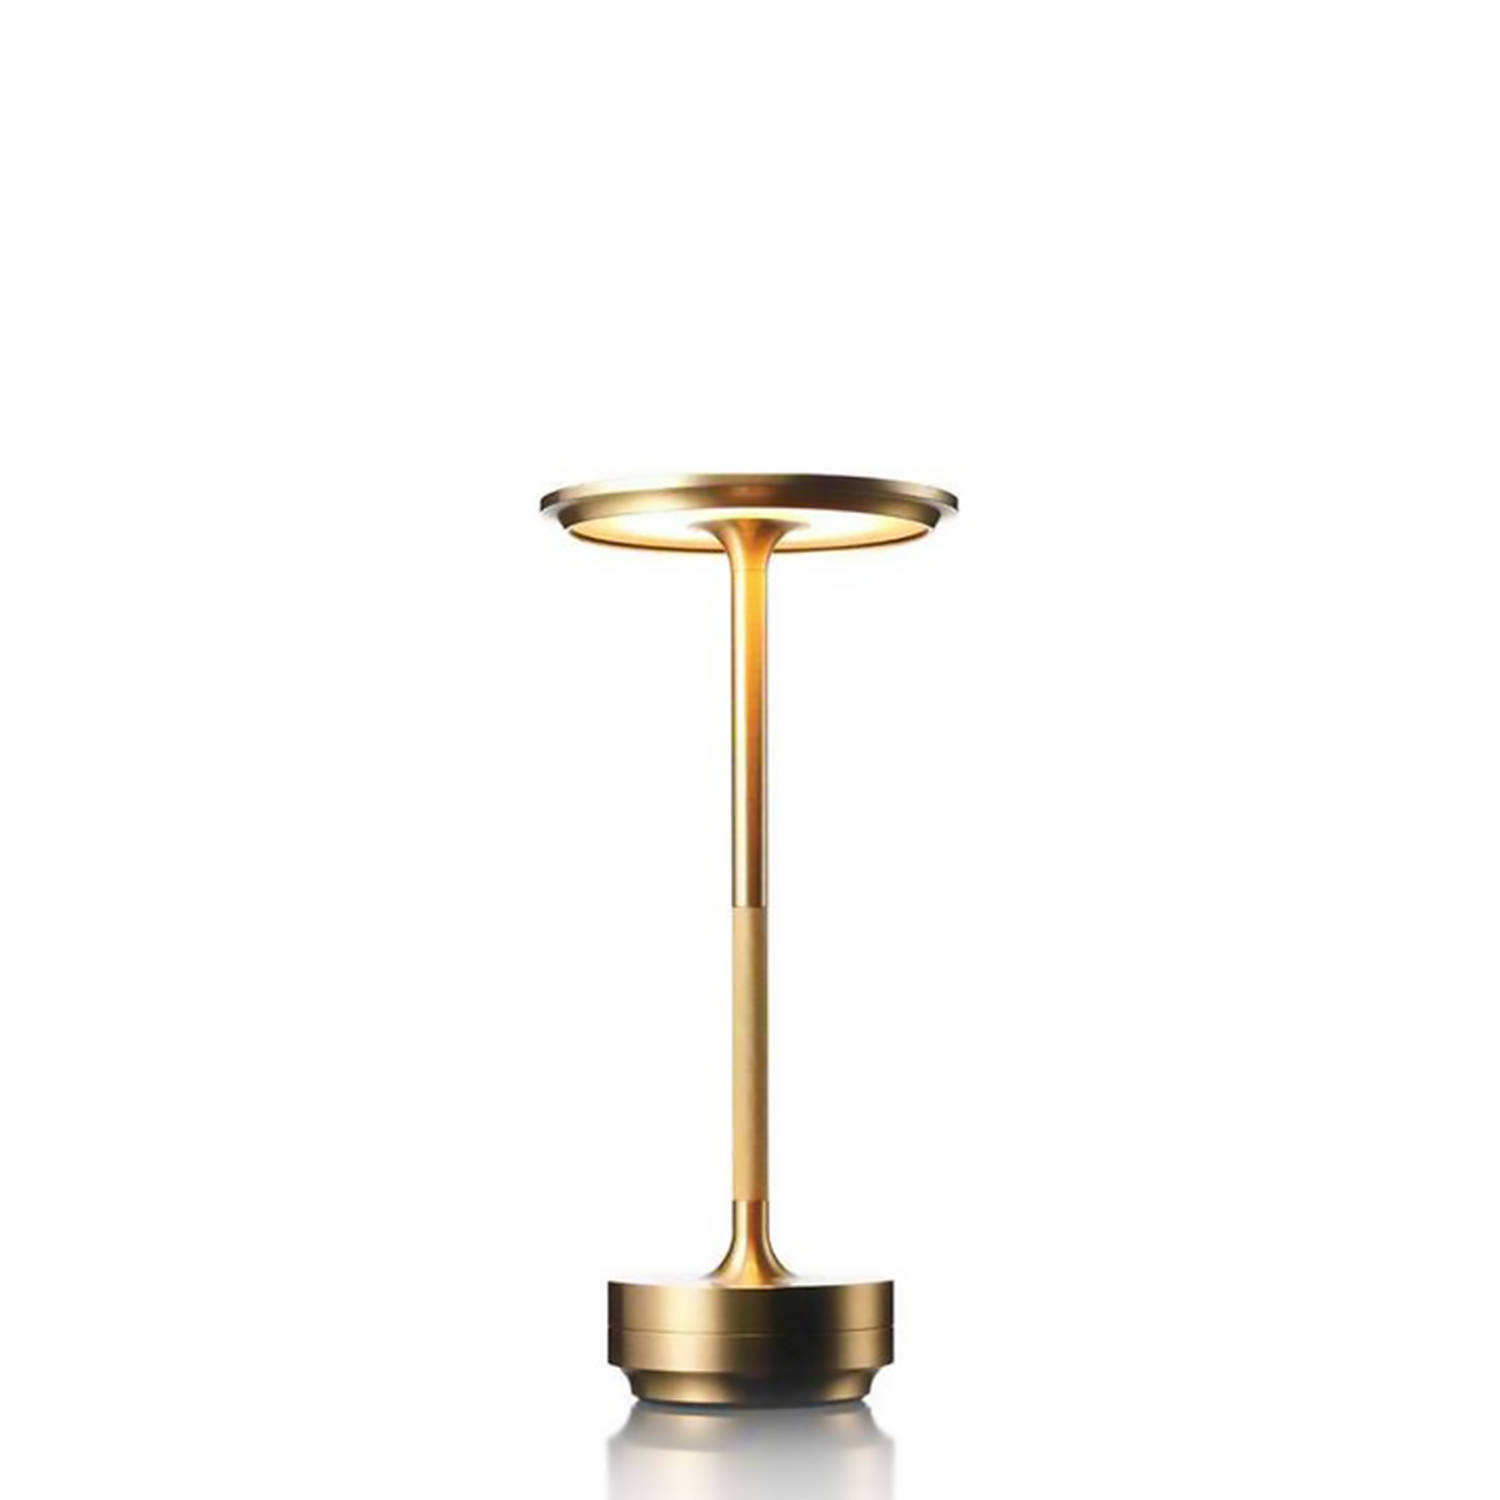 Goliving Tafellamp Op Accu - Oplaadbaar en Dimbaar - Spatwaterbestendig - Past in ieder interieur - Energiezuinig - Hoogte 27 cm - Goud